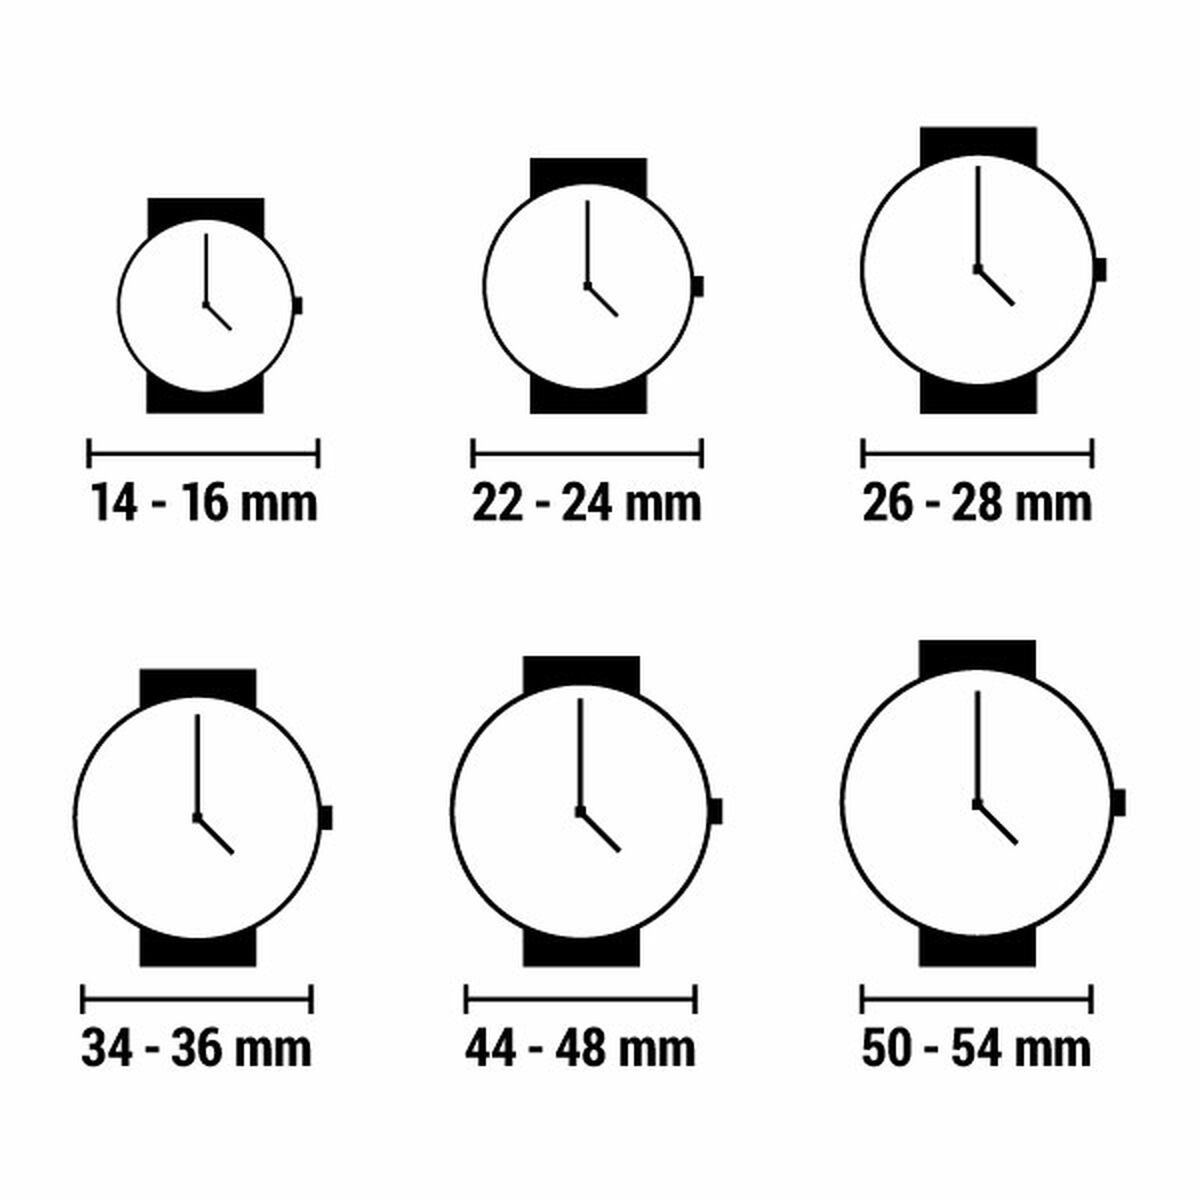 Horloge Dames Watx & Colors RELOJ7_38